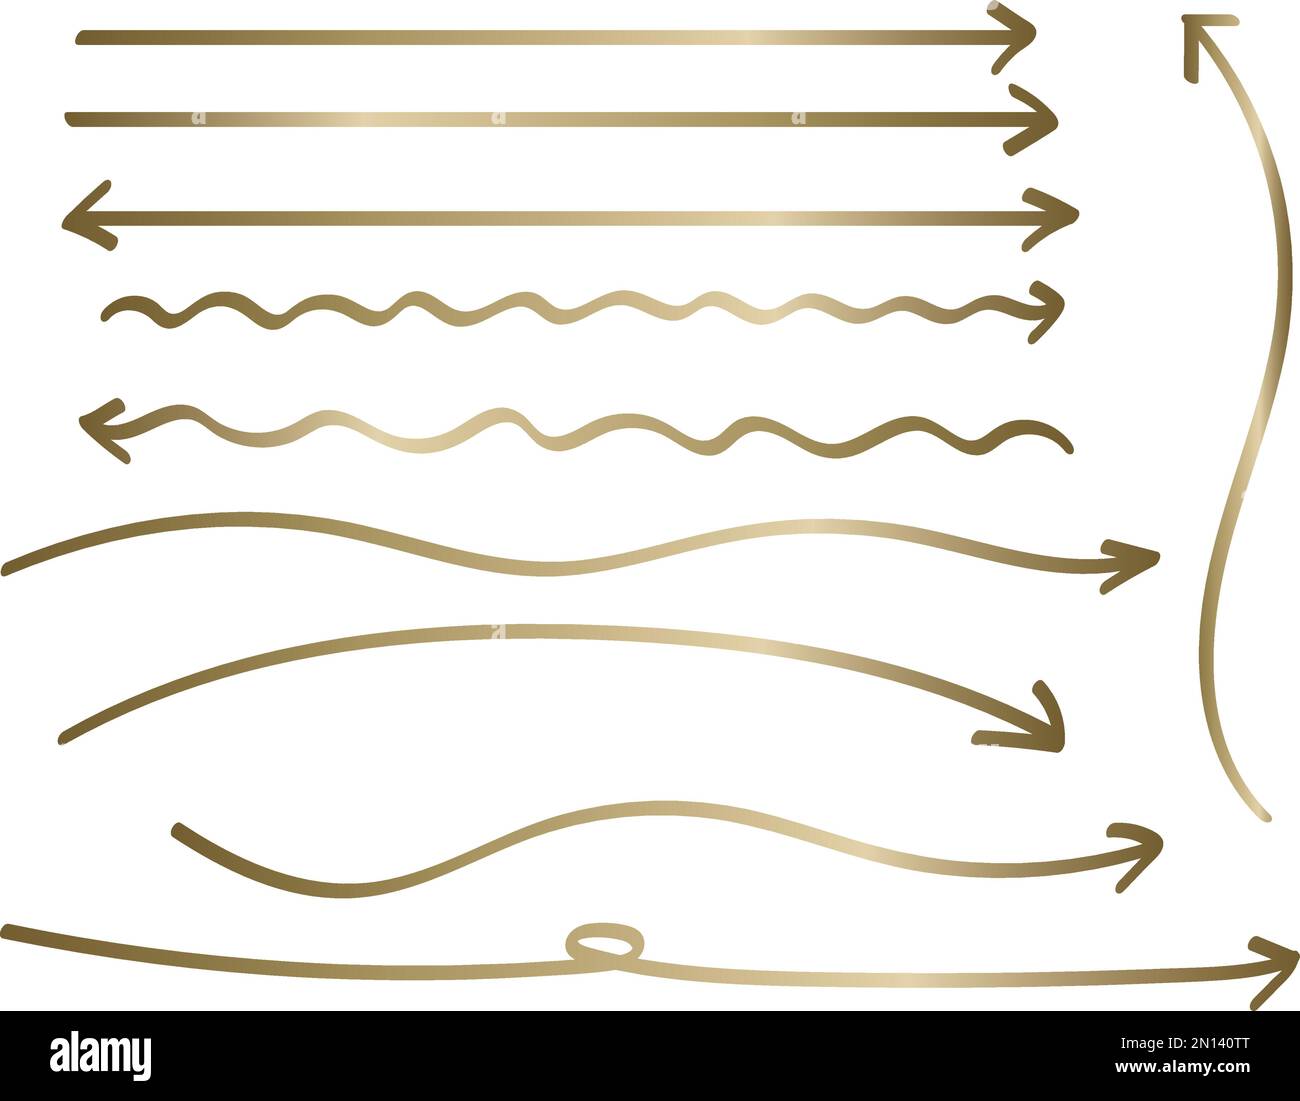 Set di frecce lunghe scritte a mano con gradiente dorato. Frecce che si attorcigliano o frecce leggermente curve e diritte. Illustrazione Vettoriale